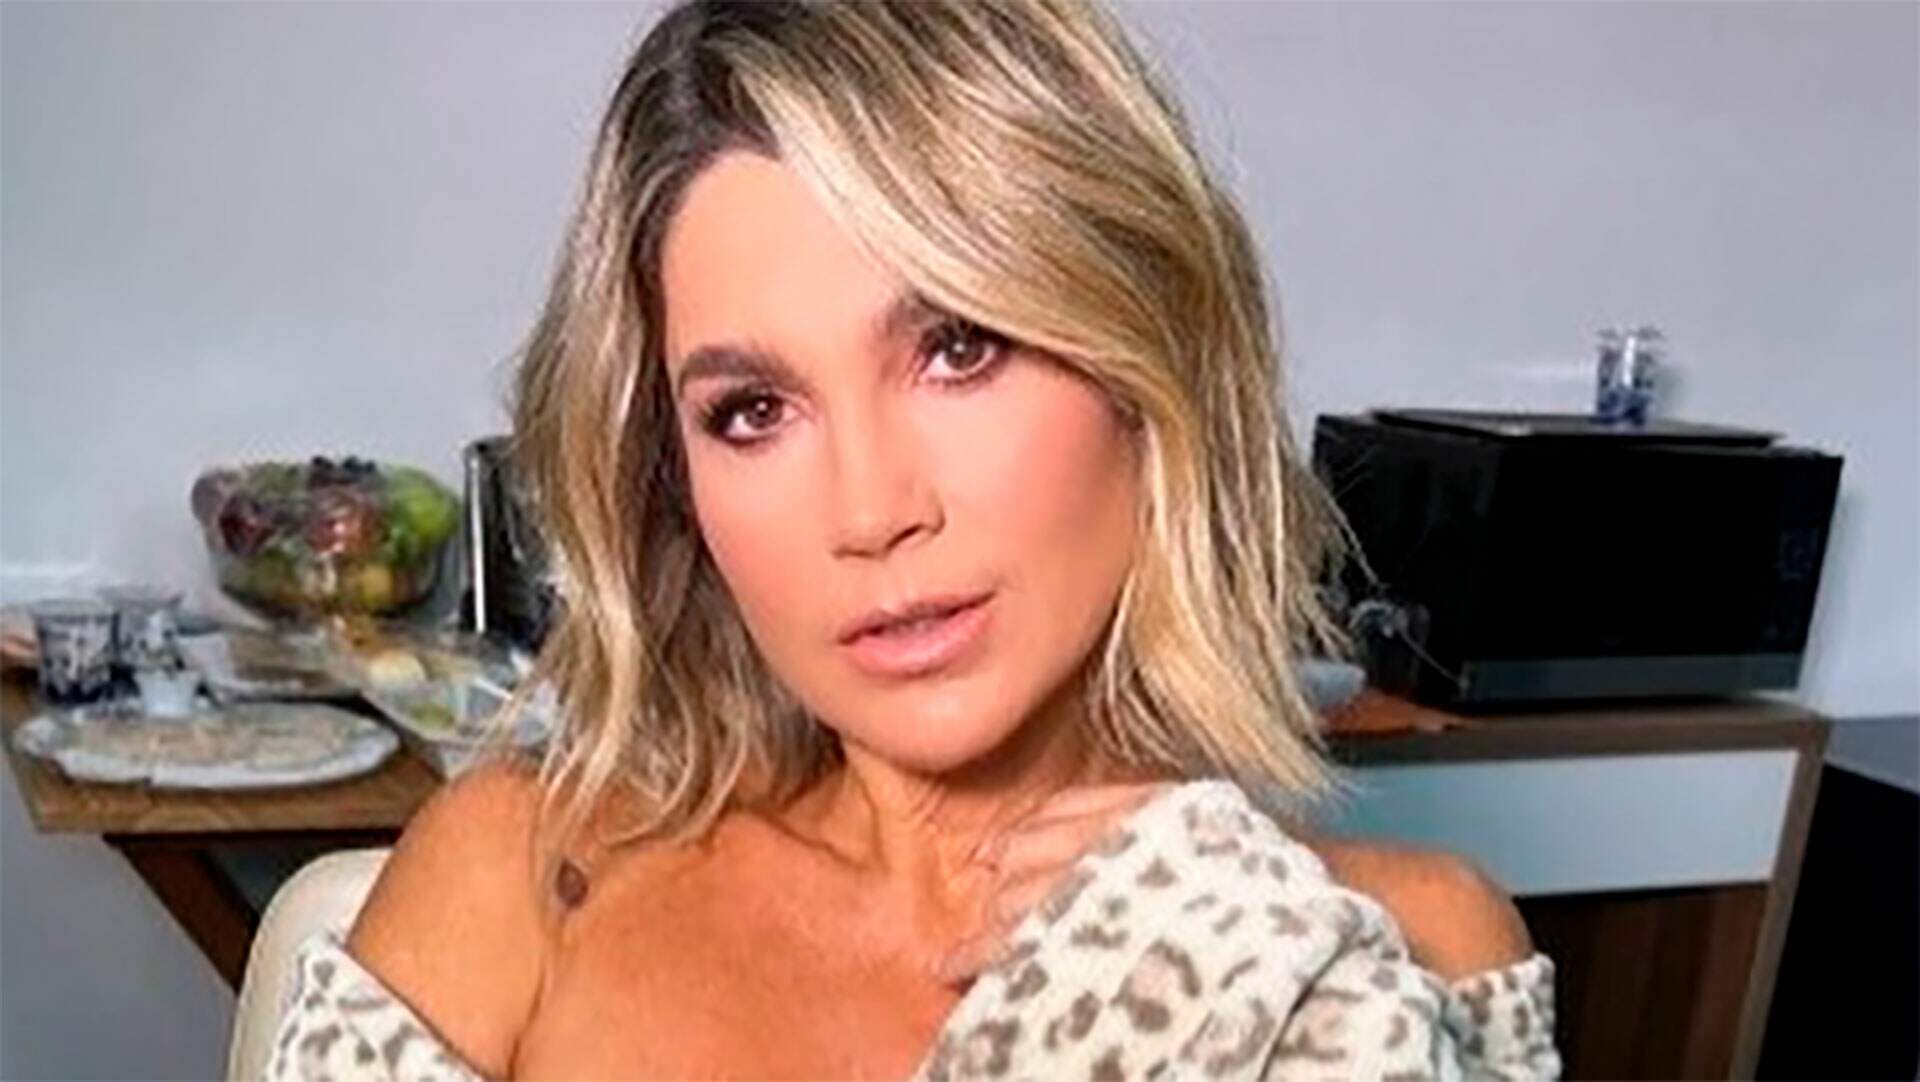 Flávia Alessandra exibe vídeo nos bastidores com roupão e choca: “Já pensou se entraram?”